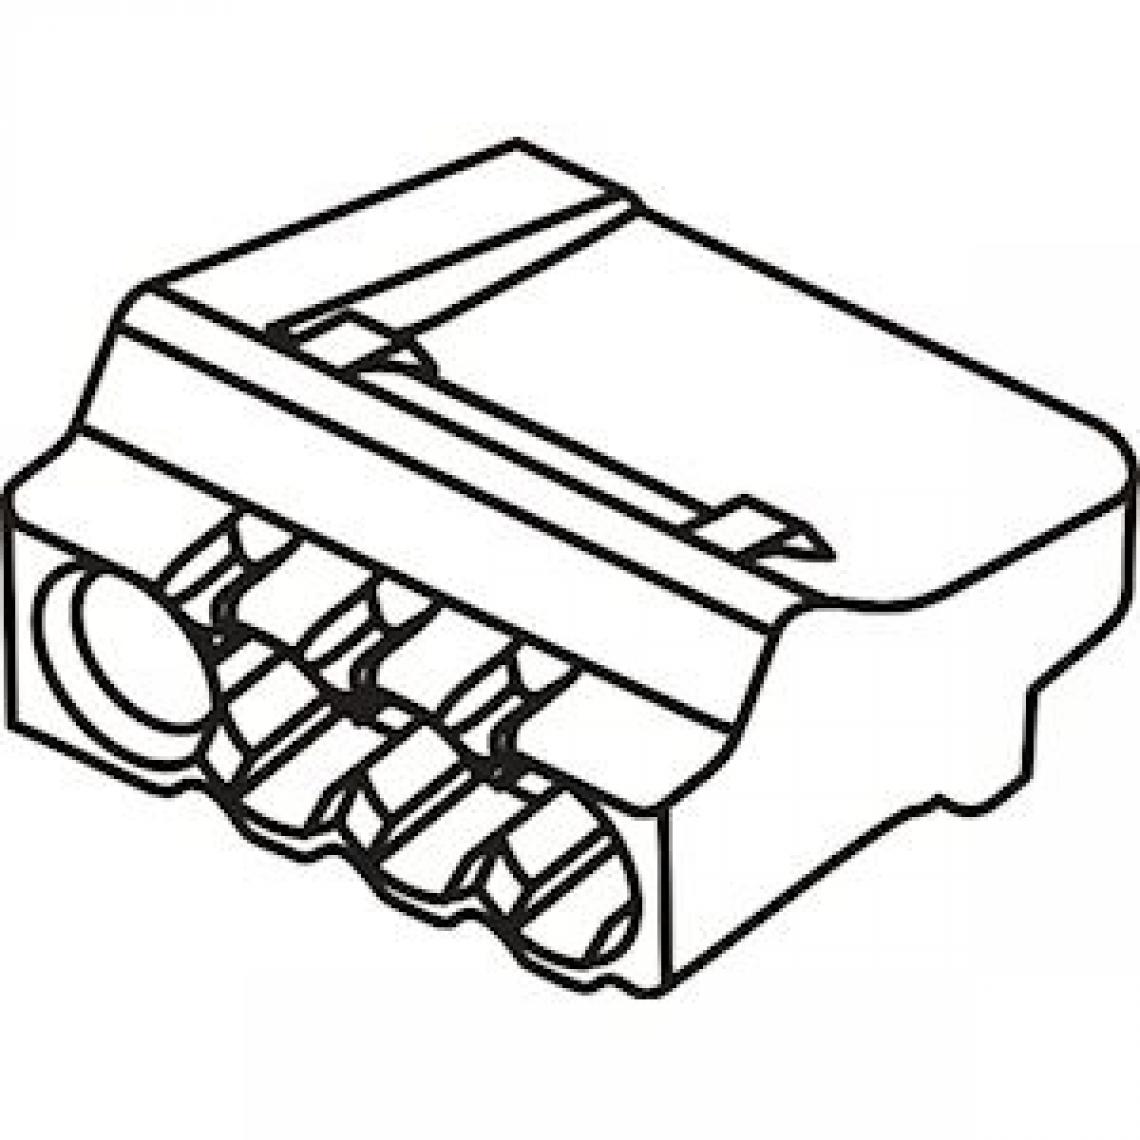 Bizline - borne de connexion - automatique - 4 entrées - transparente - jaune - bizline 103404 - Accessoires de câblage